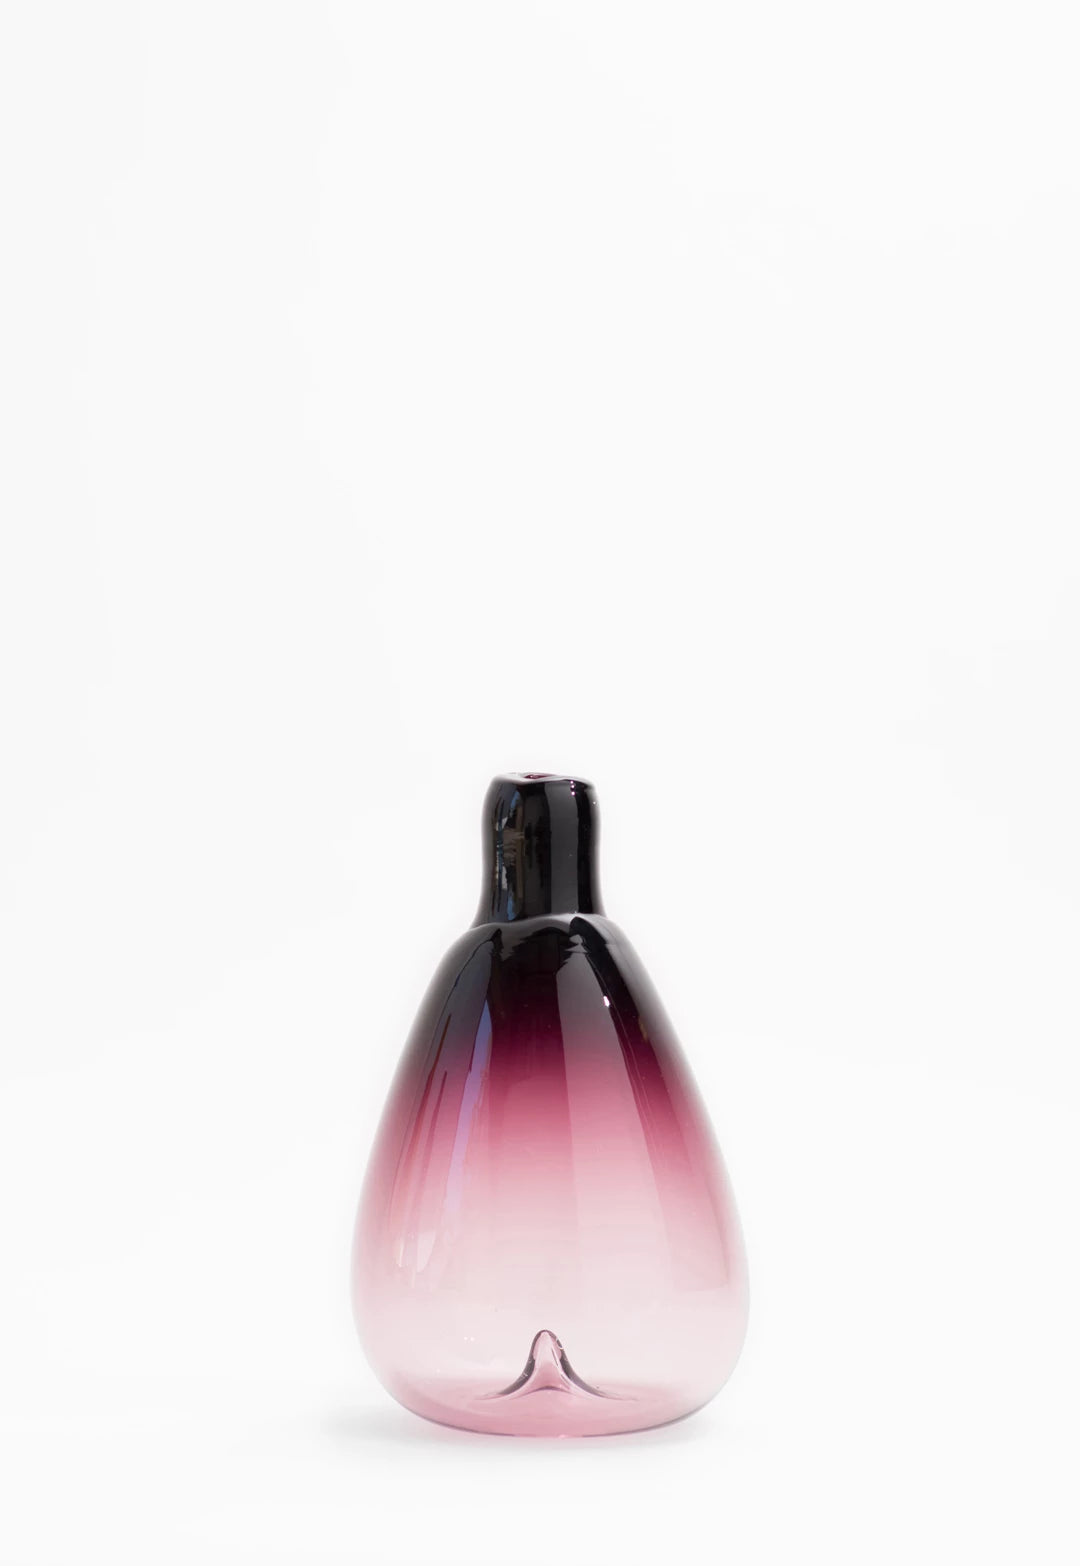 Bottle Vessel by SkLo